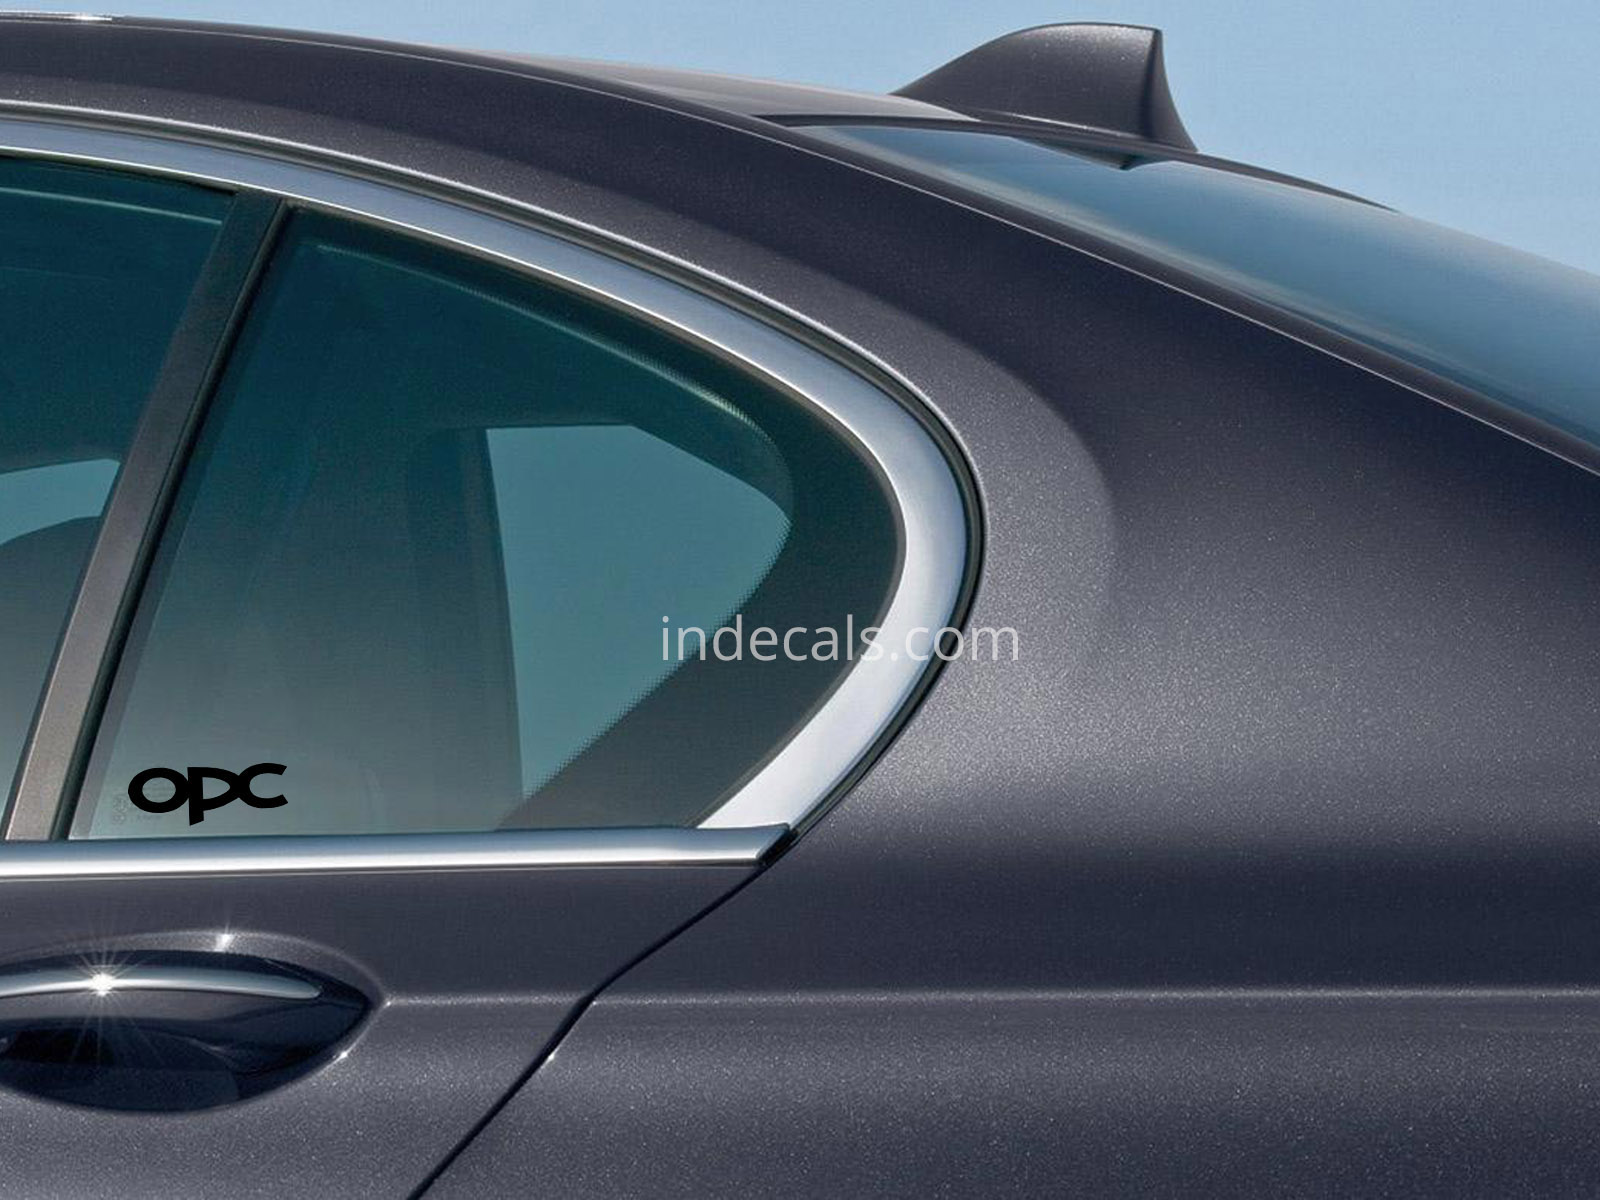 3 x Opel OPC Stickers for Rear Window - Black